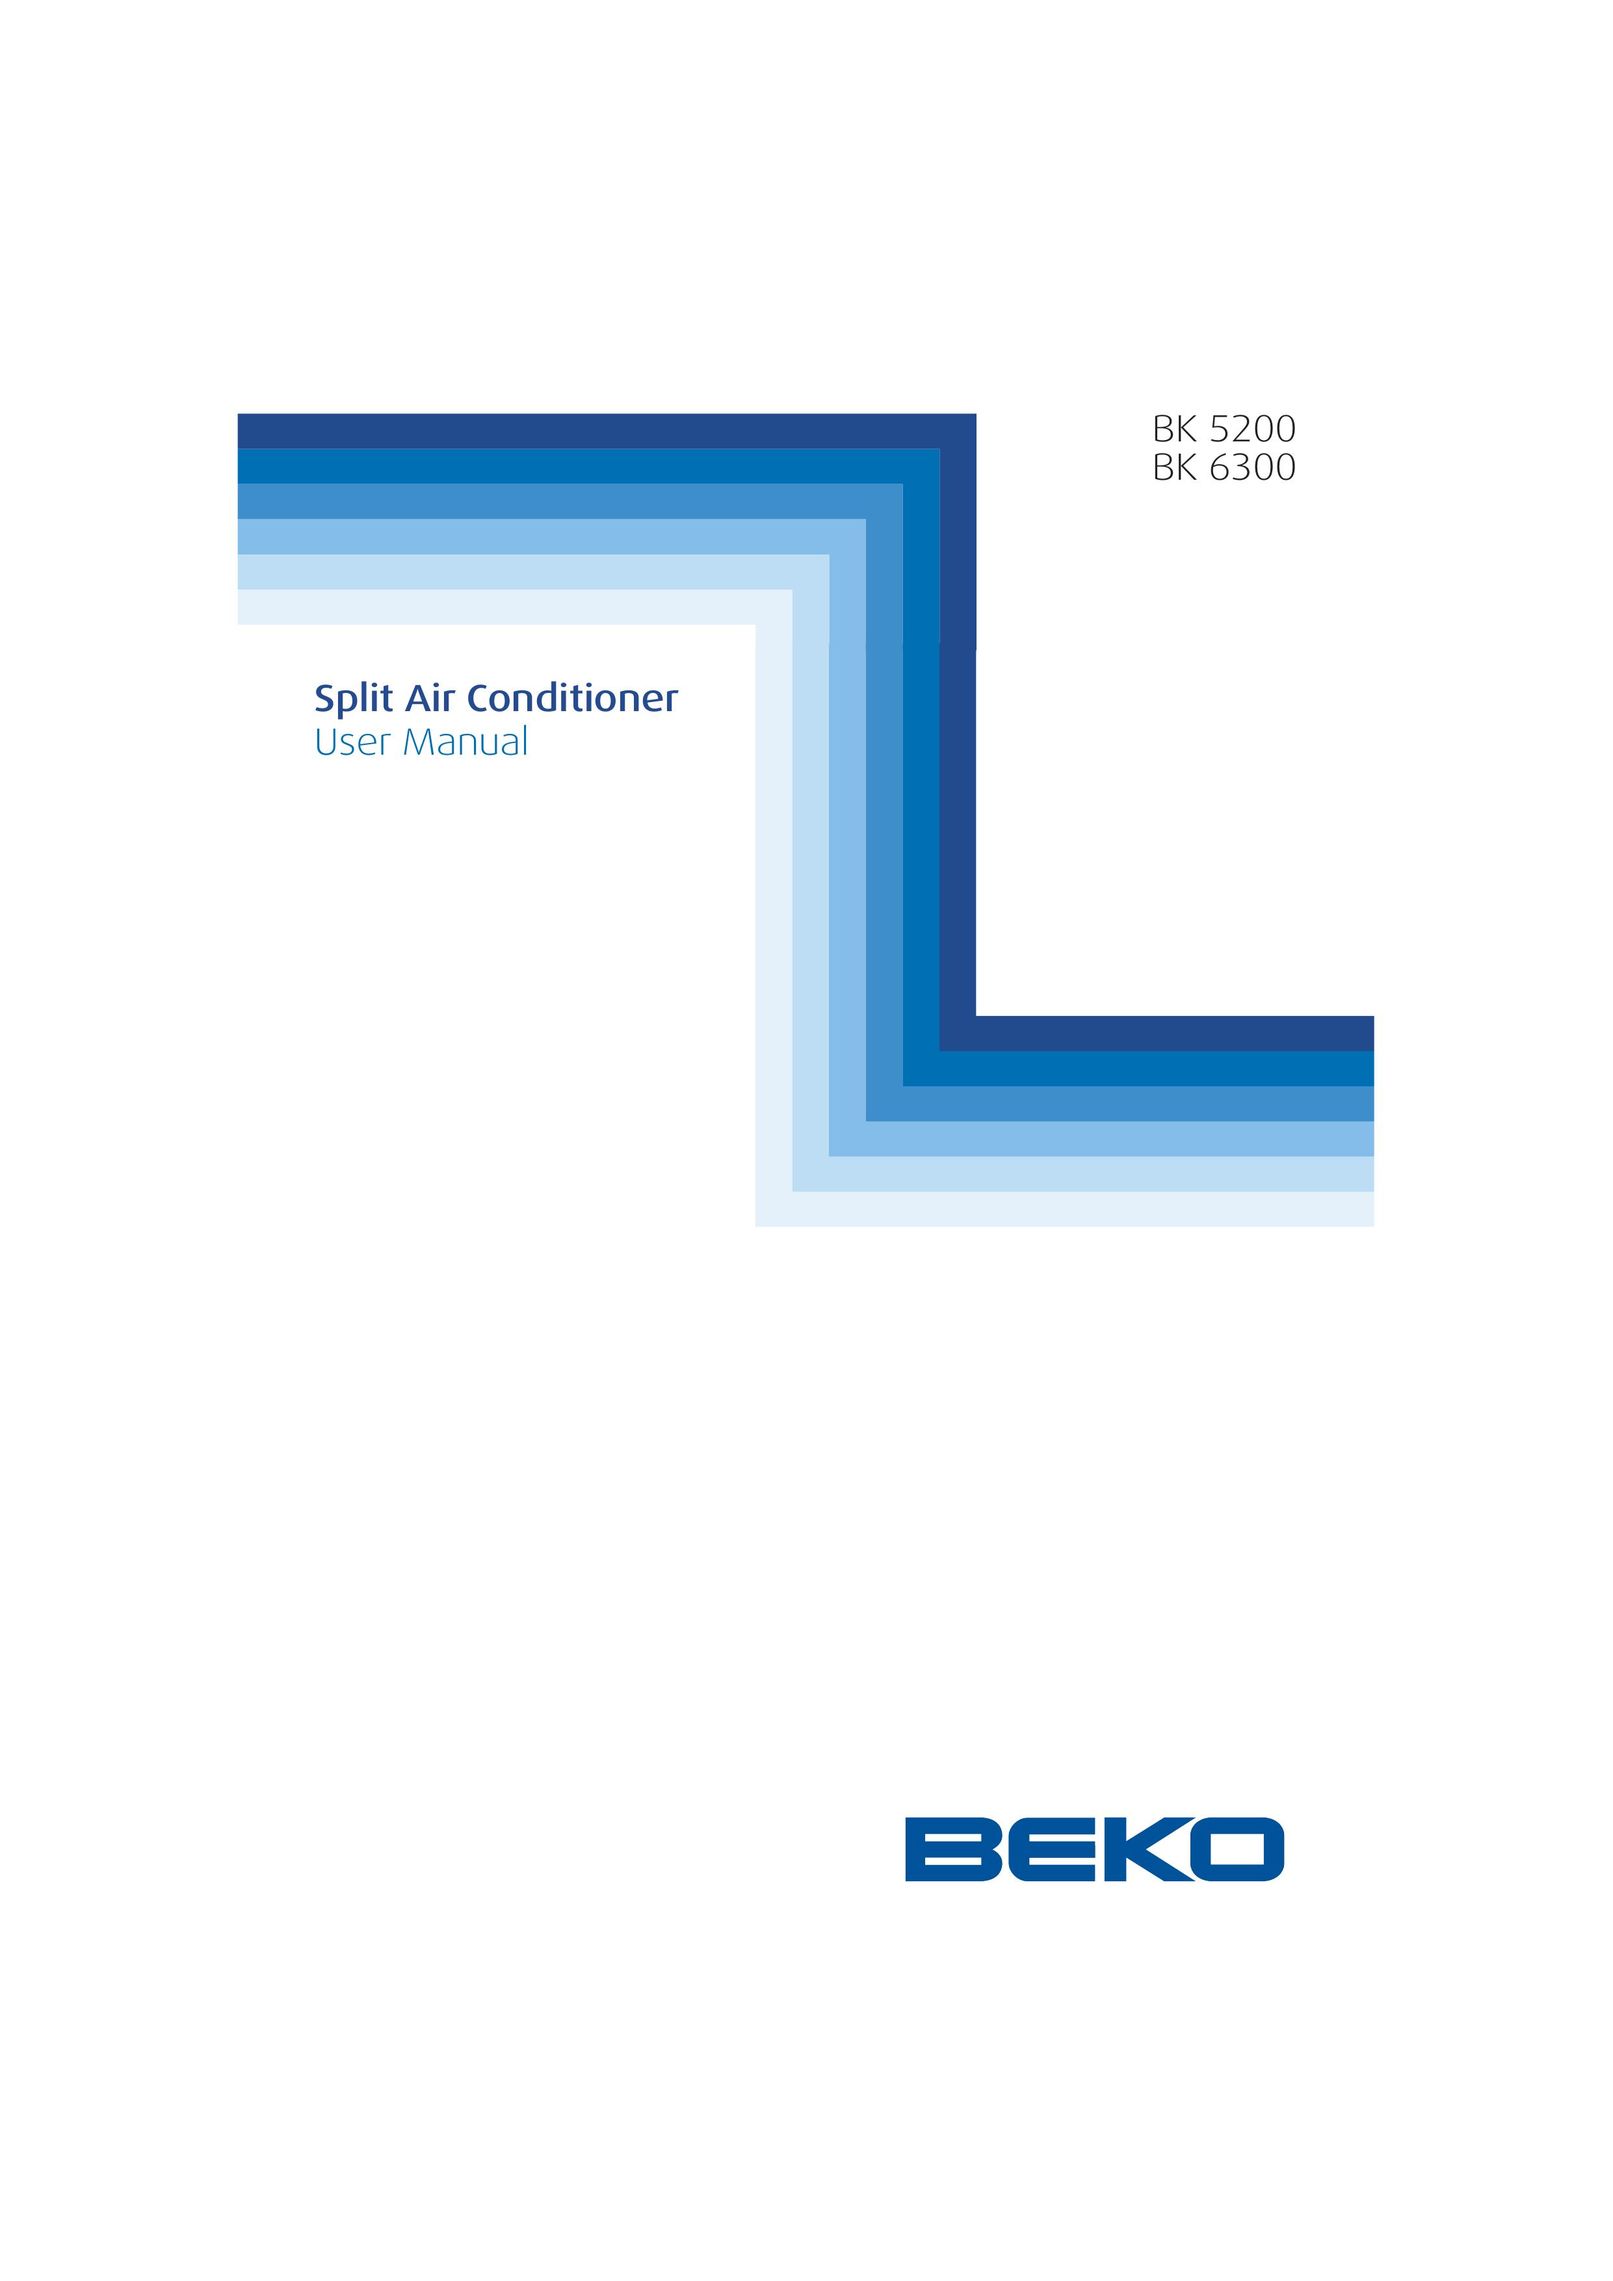 Beko BK 5200 Air Conditioner User Manual